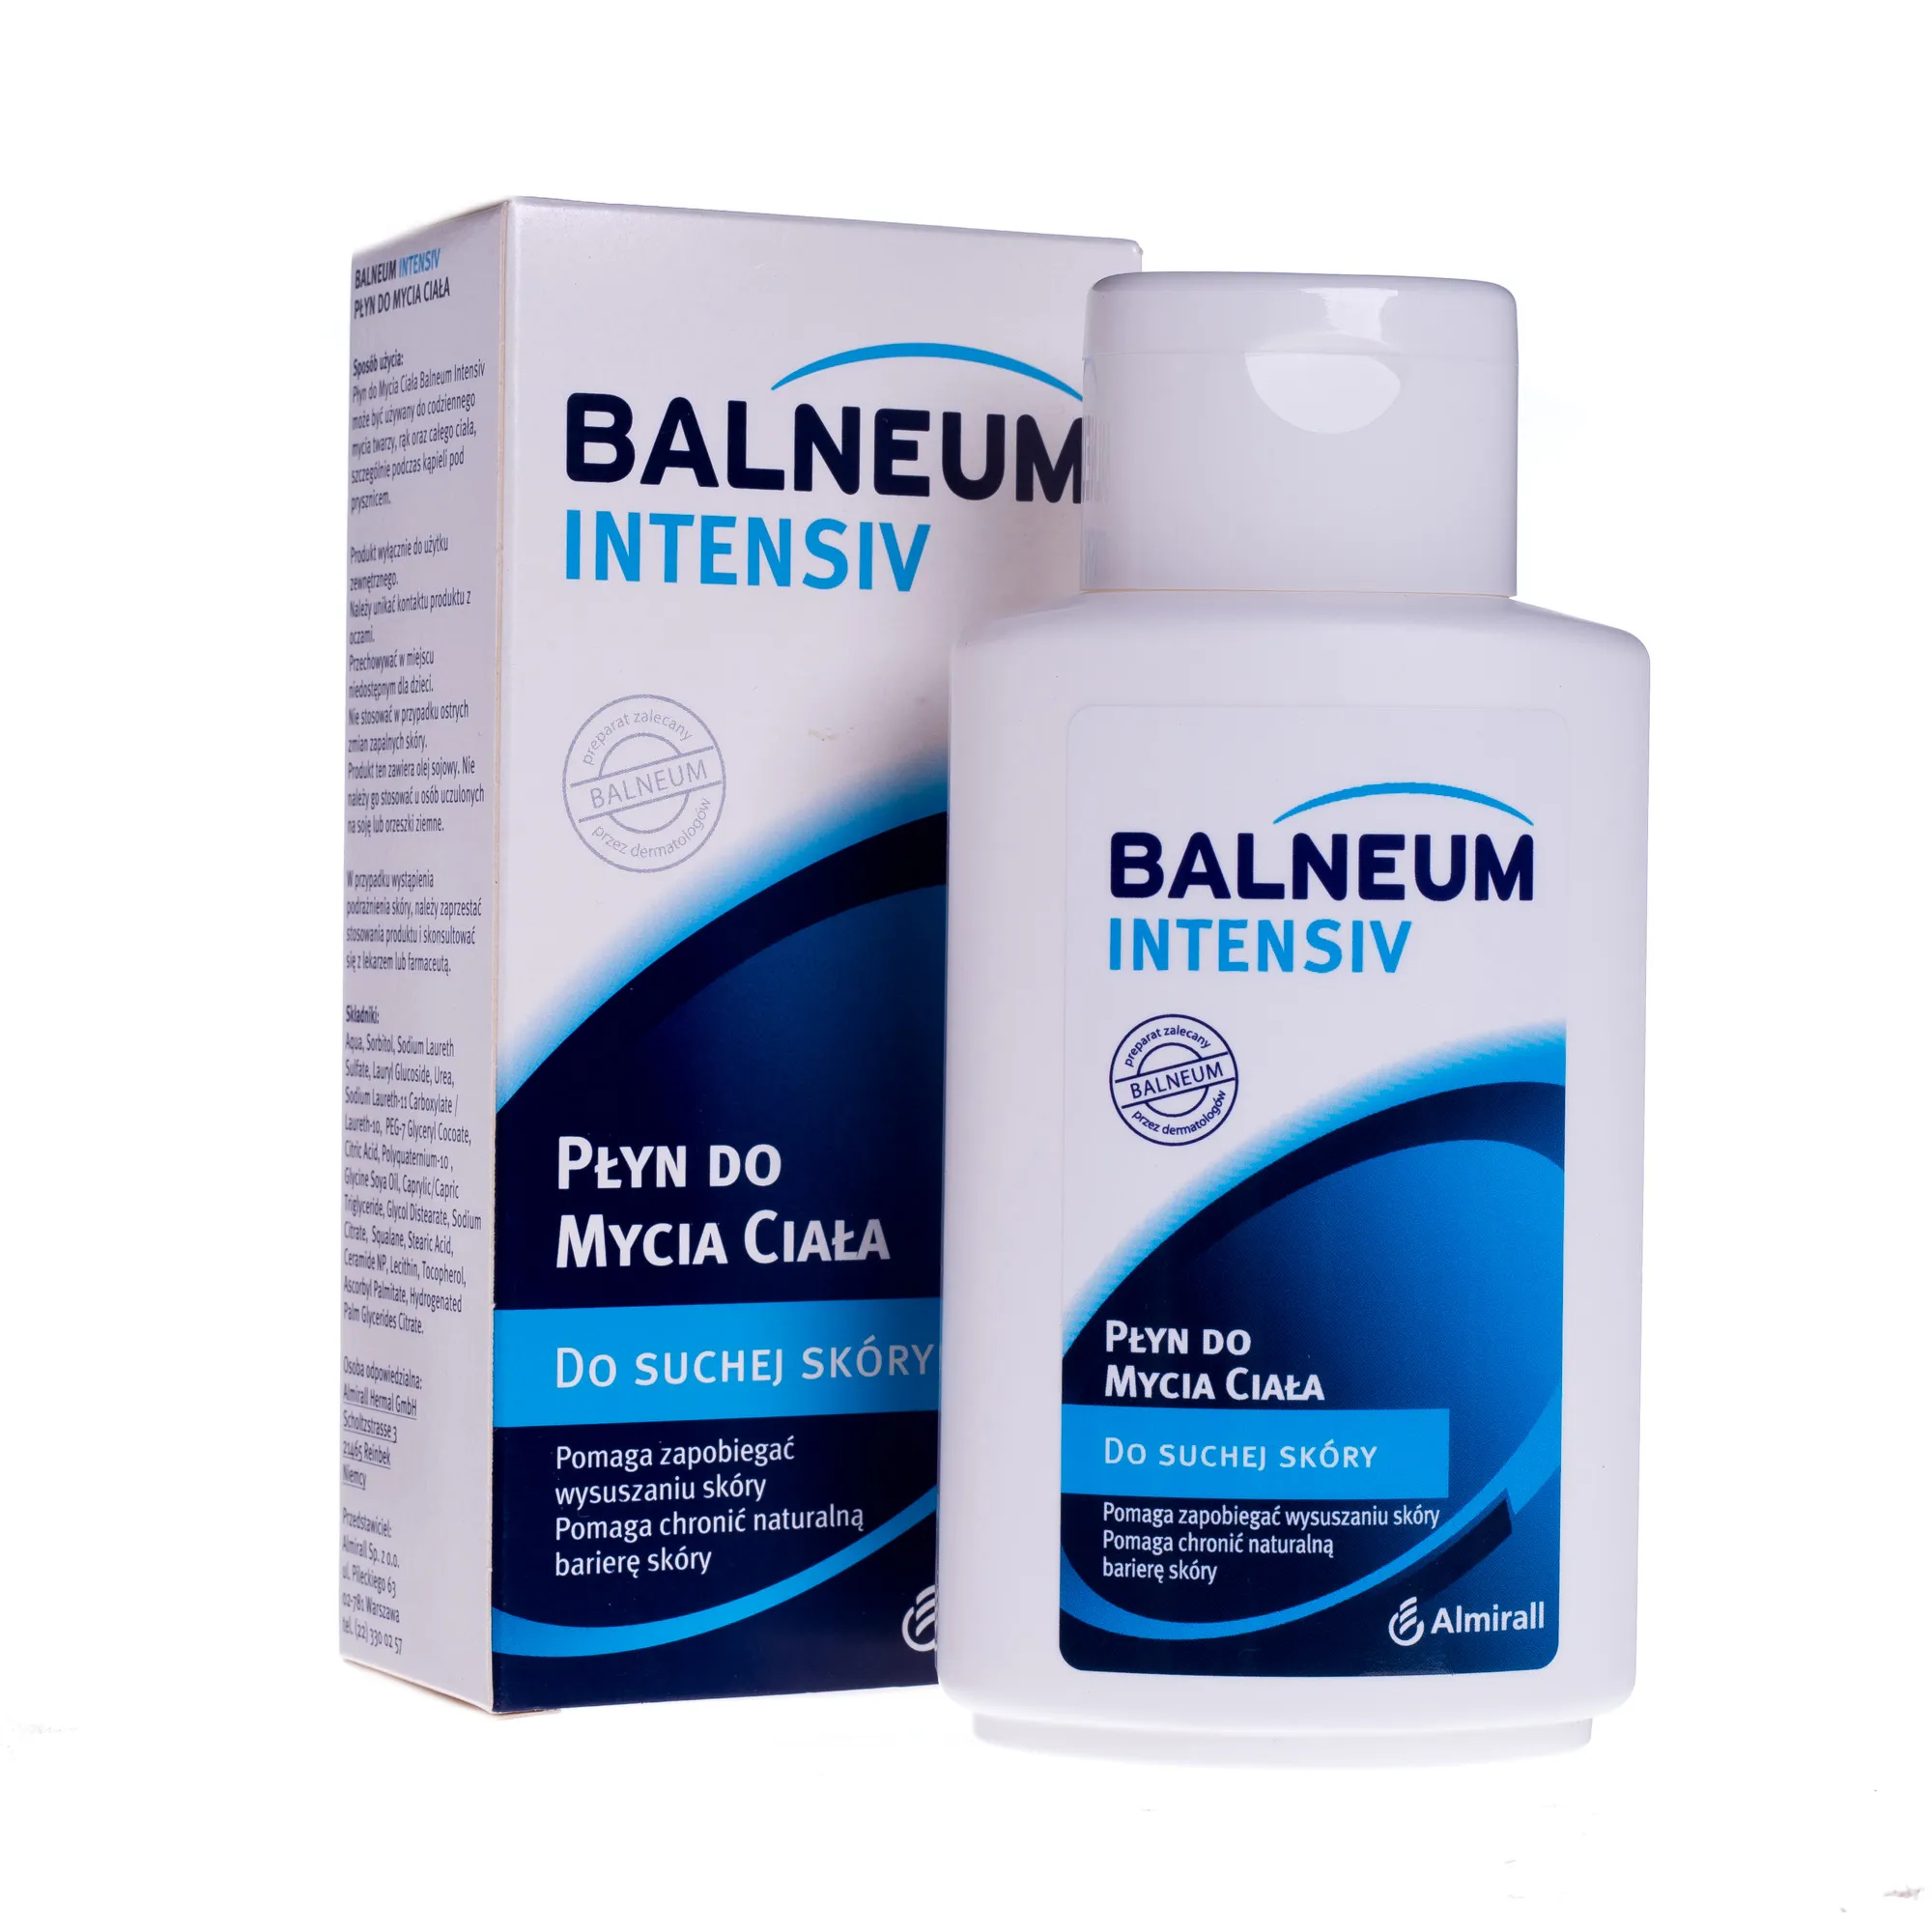 Balneum Intensiv, płyn do mycia ciała, do suchej skóry, 200 ml 